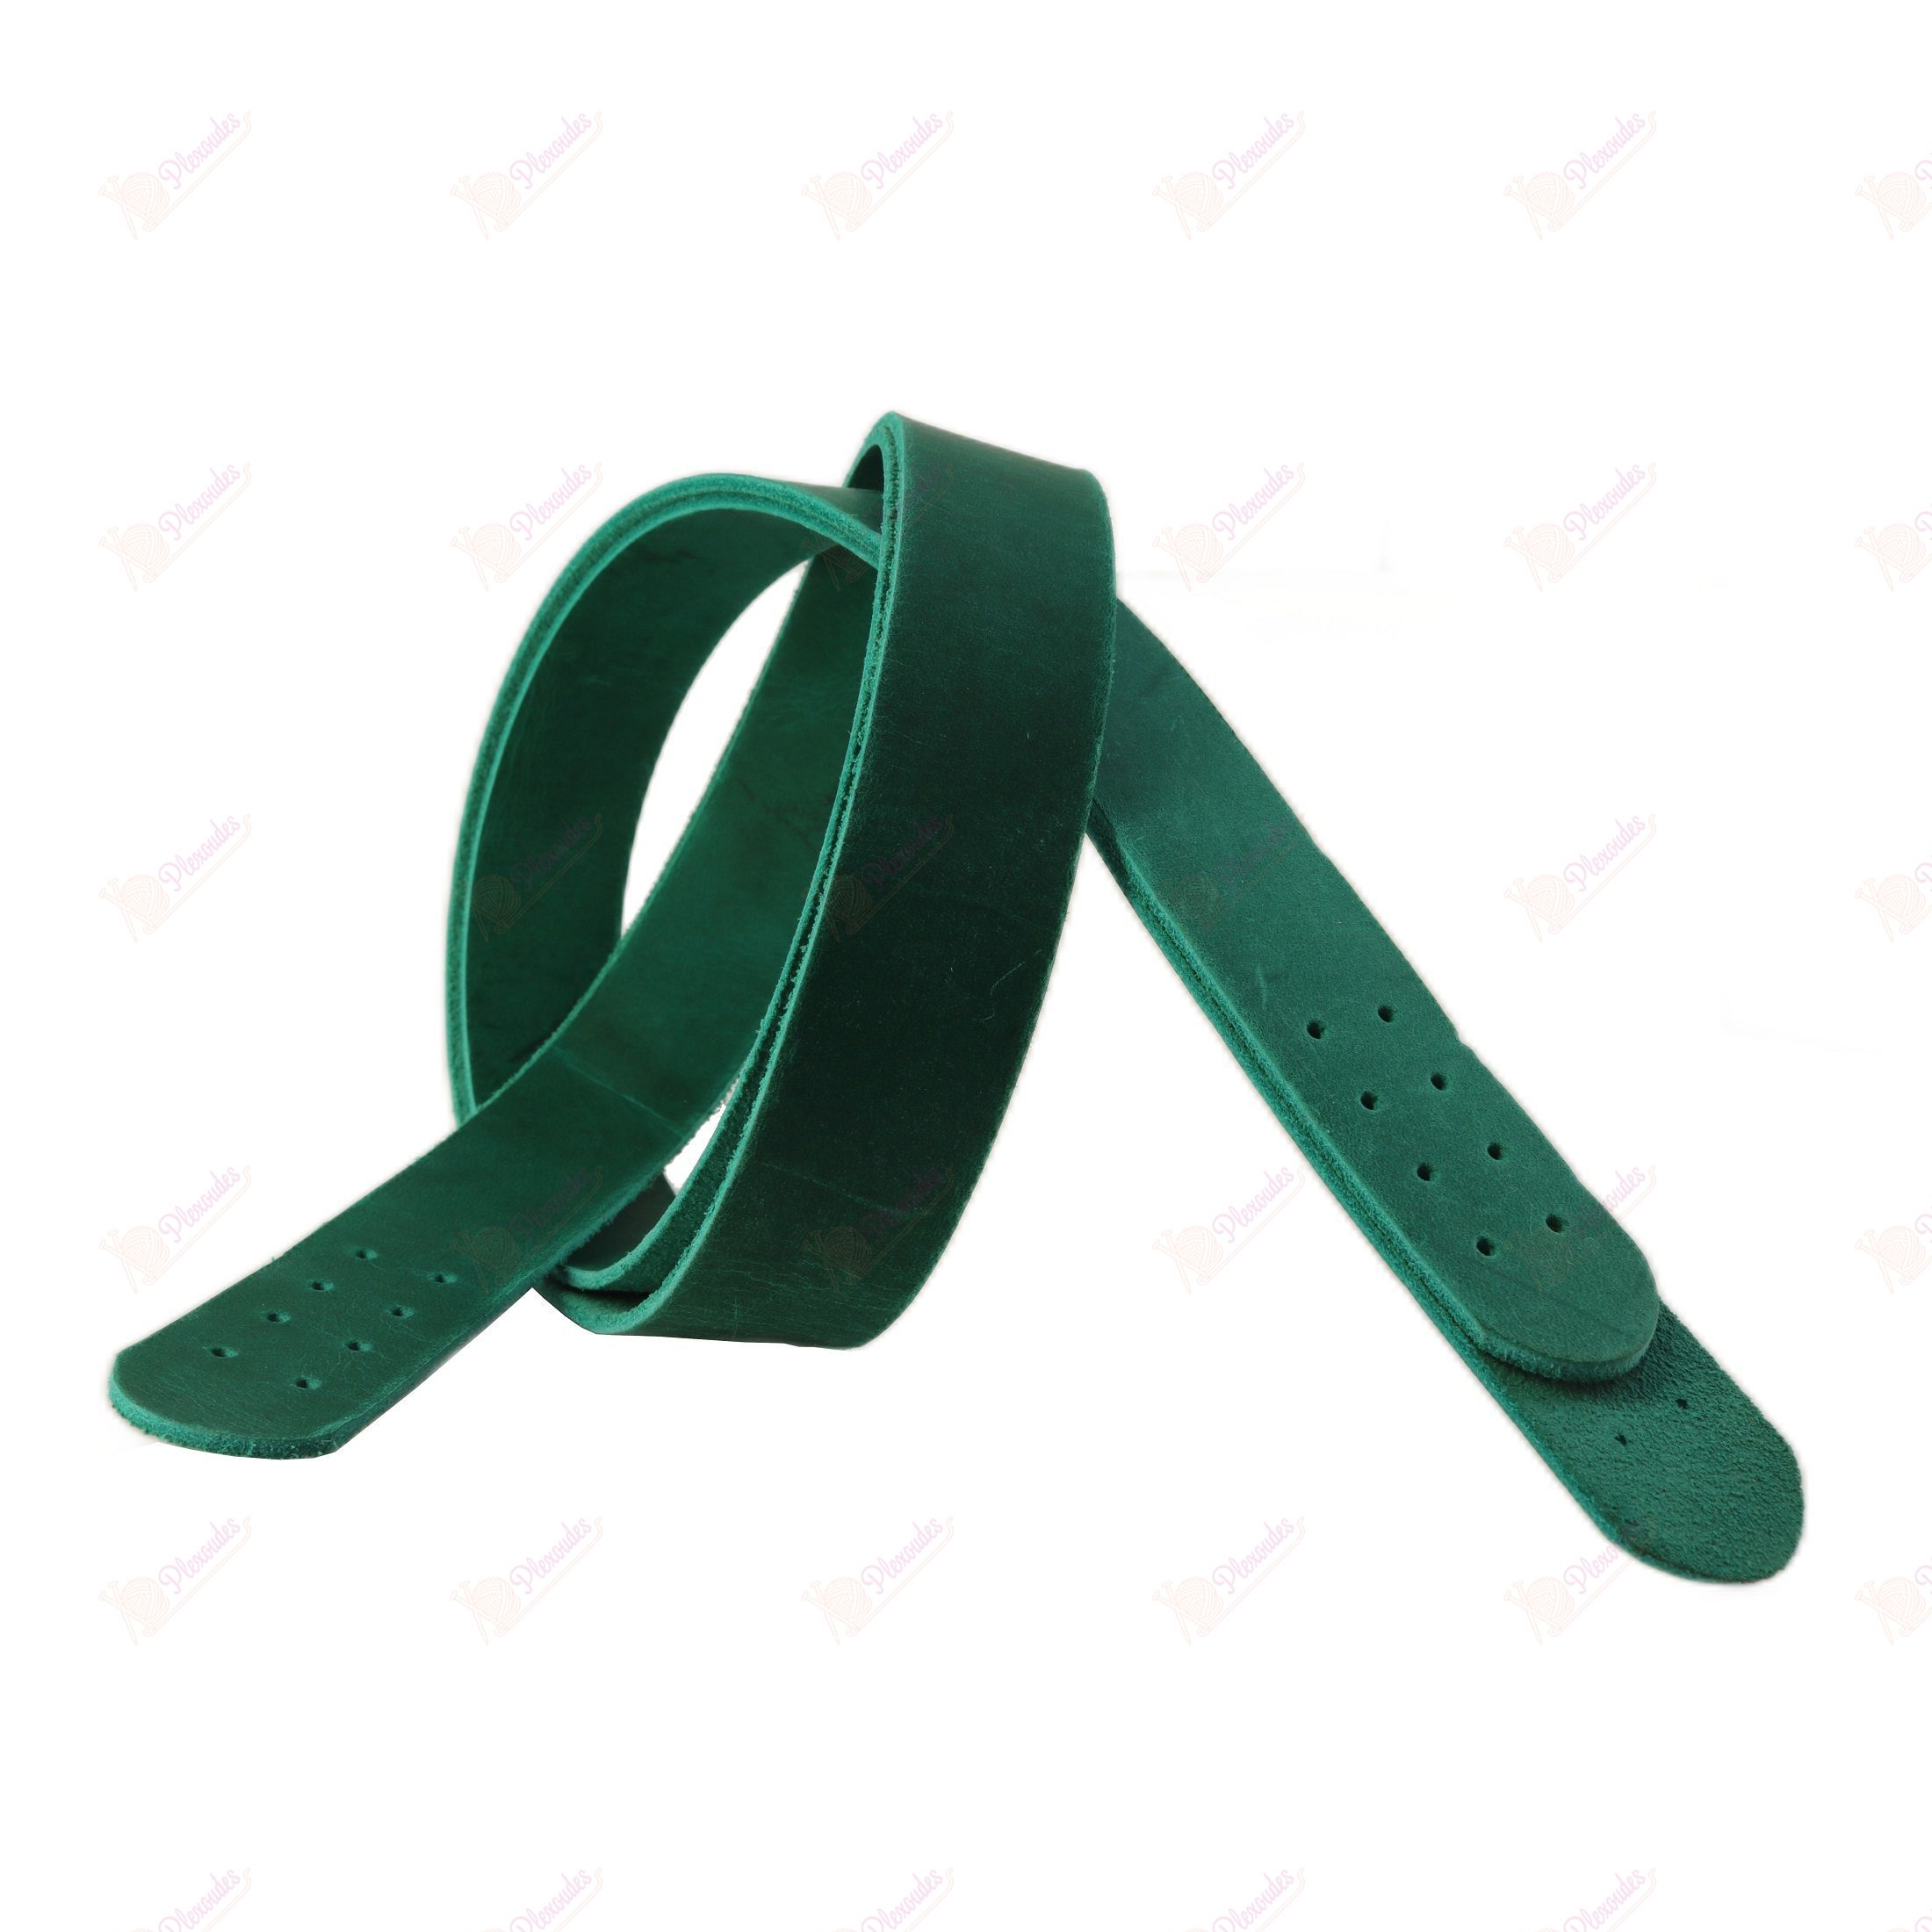 Δερμάτινα λουριά ώμου για τσάντες 06 - Πράσινο 75 cm